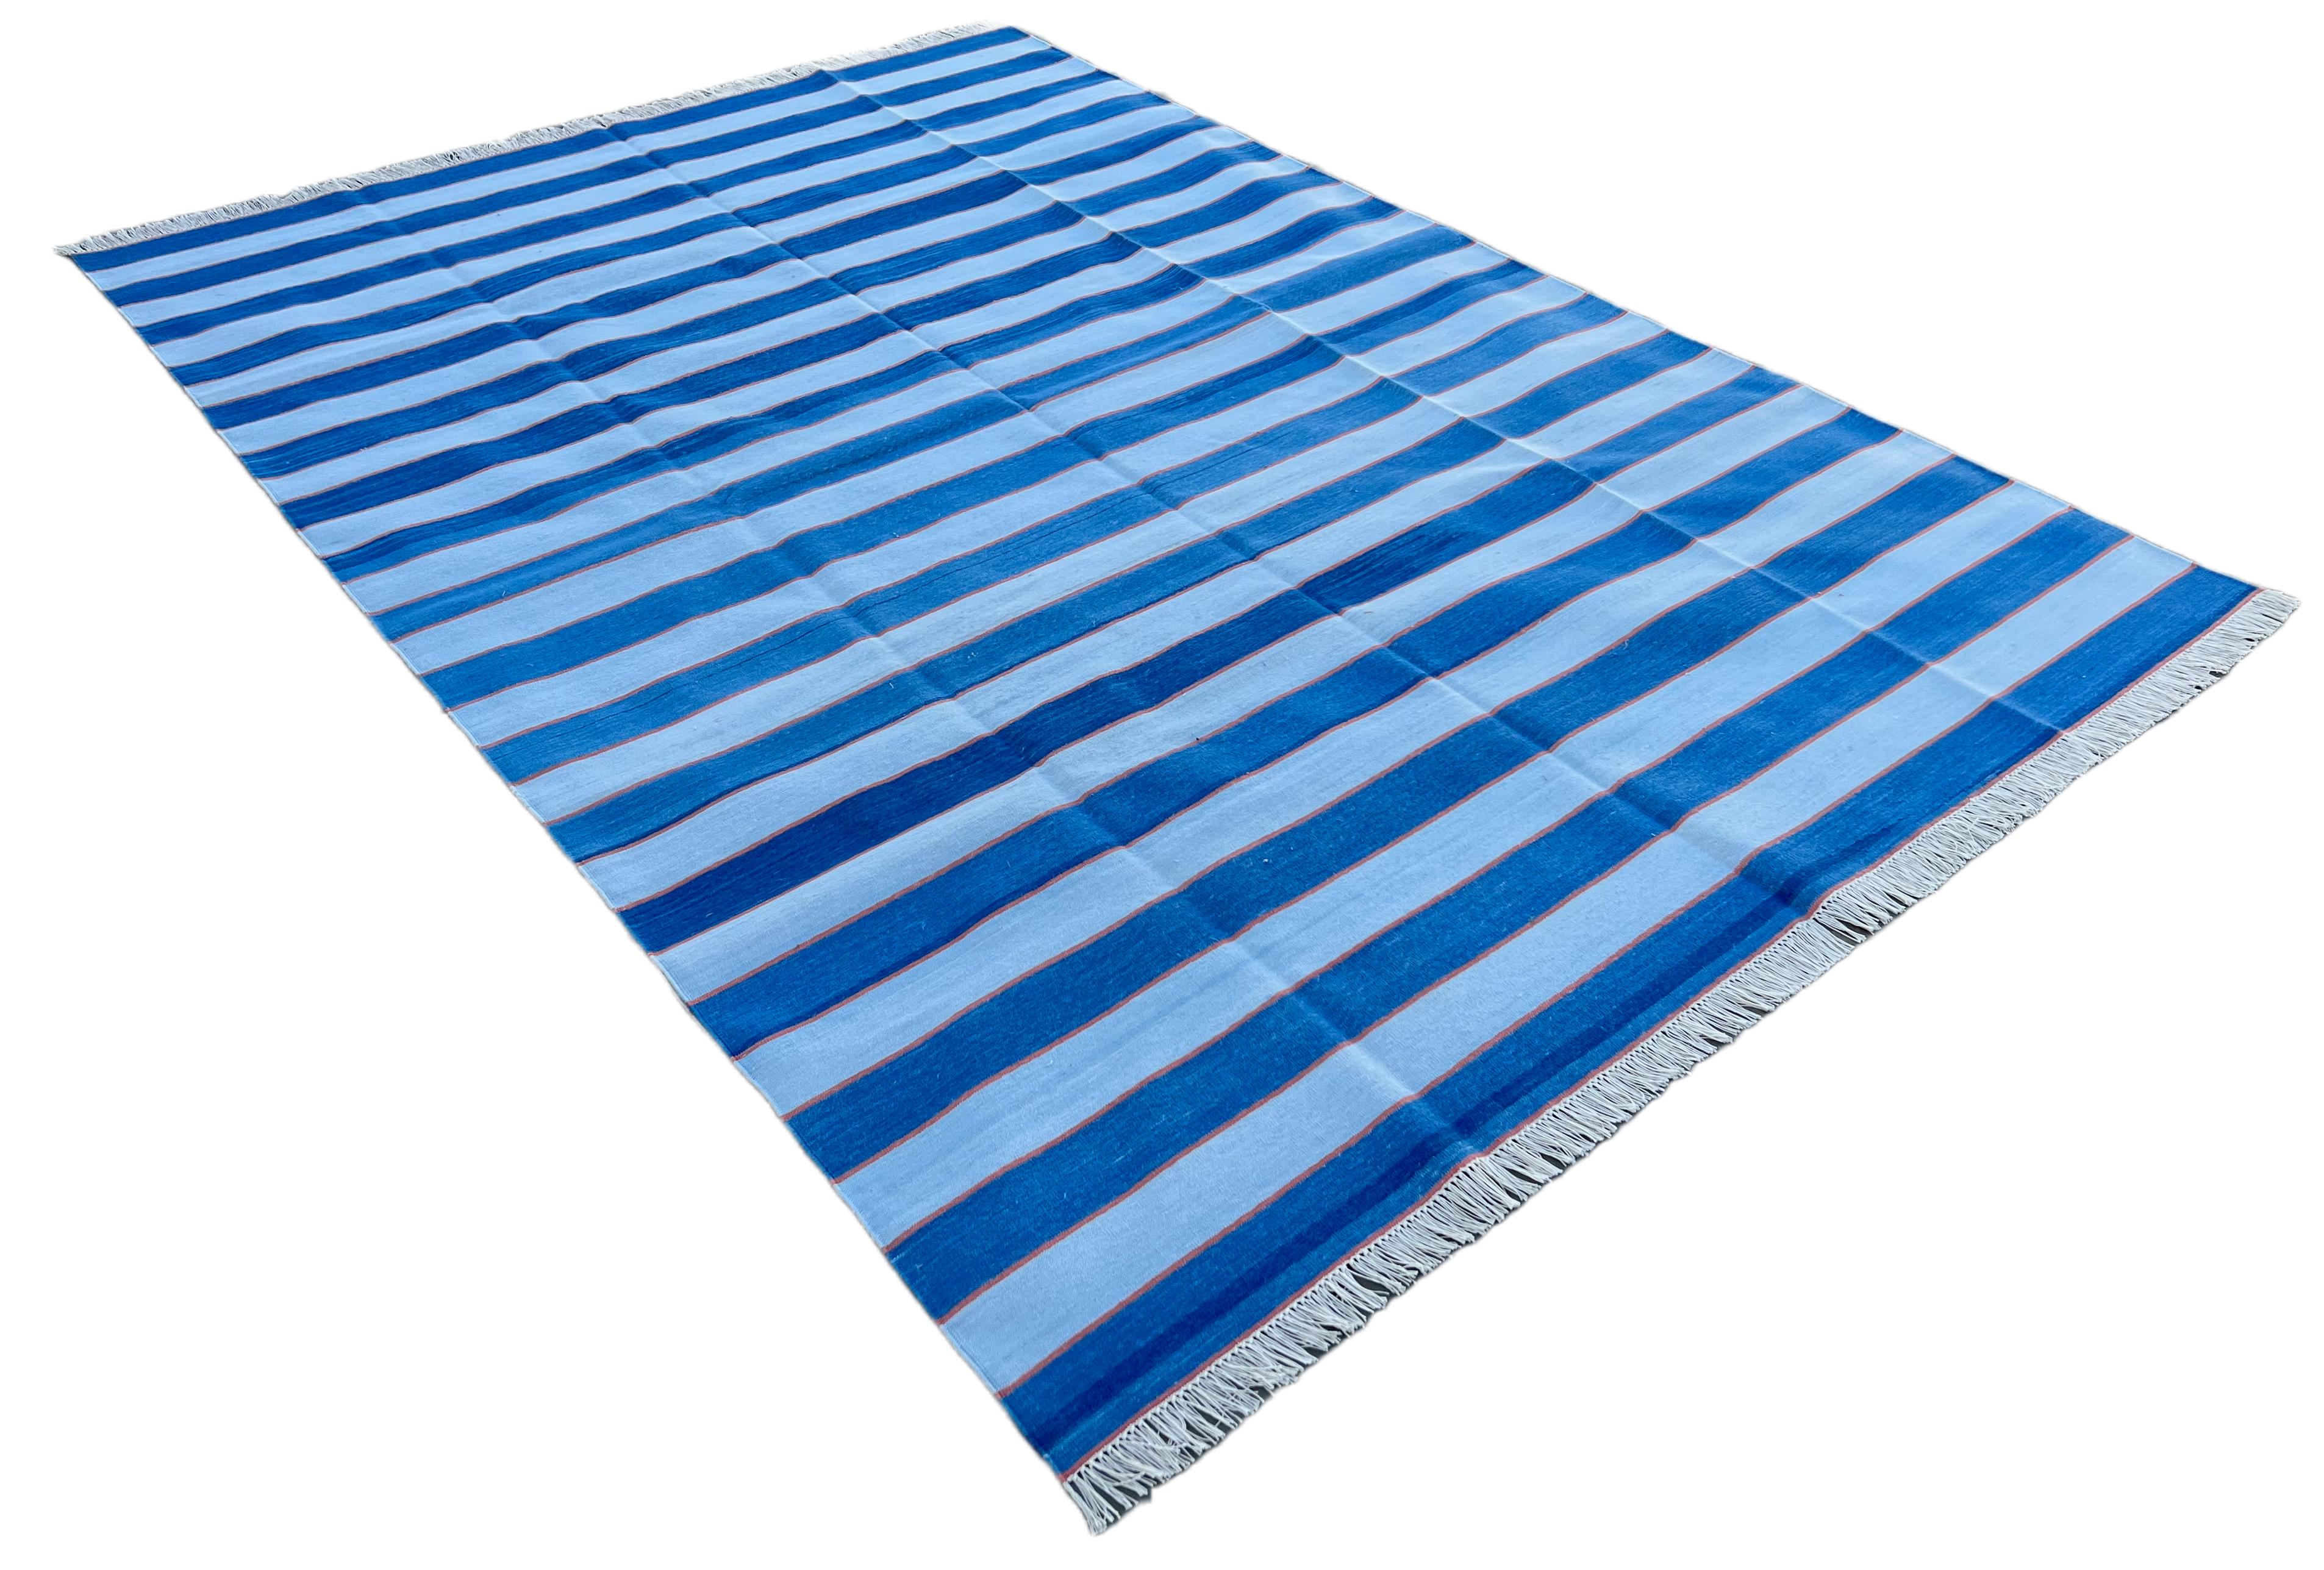 Baumwolle pflanzlich gefärbt Indigo Blau und Orange gestreiften indischen Dhurrie Teppich-8'x10' 
Diese speziellen flachgewebten Dhurries werden aus 15-fachem Garn aus 100% Baumwolle handgewebt. Aufgrund der speziellen Fertigungstechniken, die zur